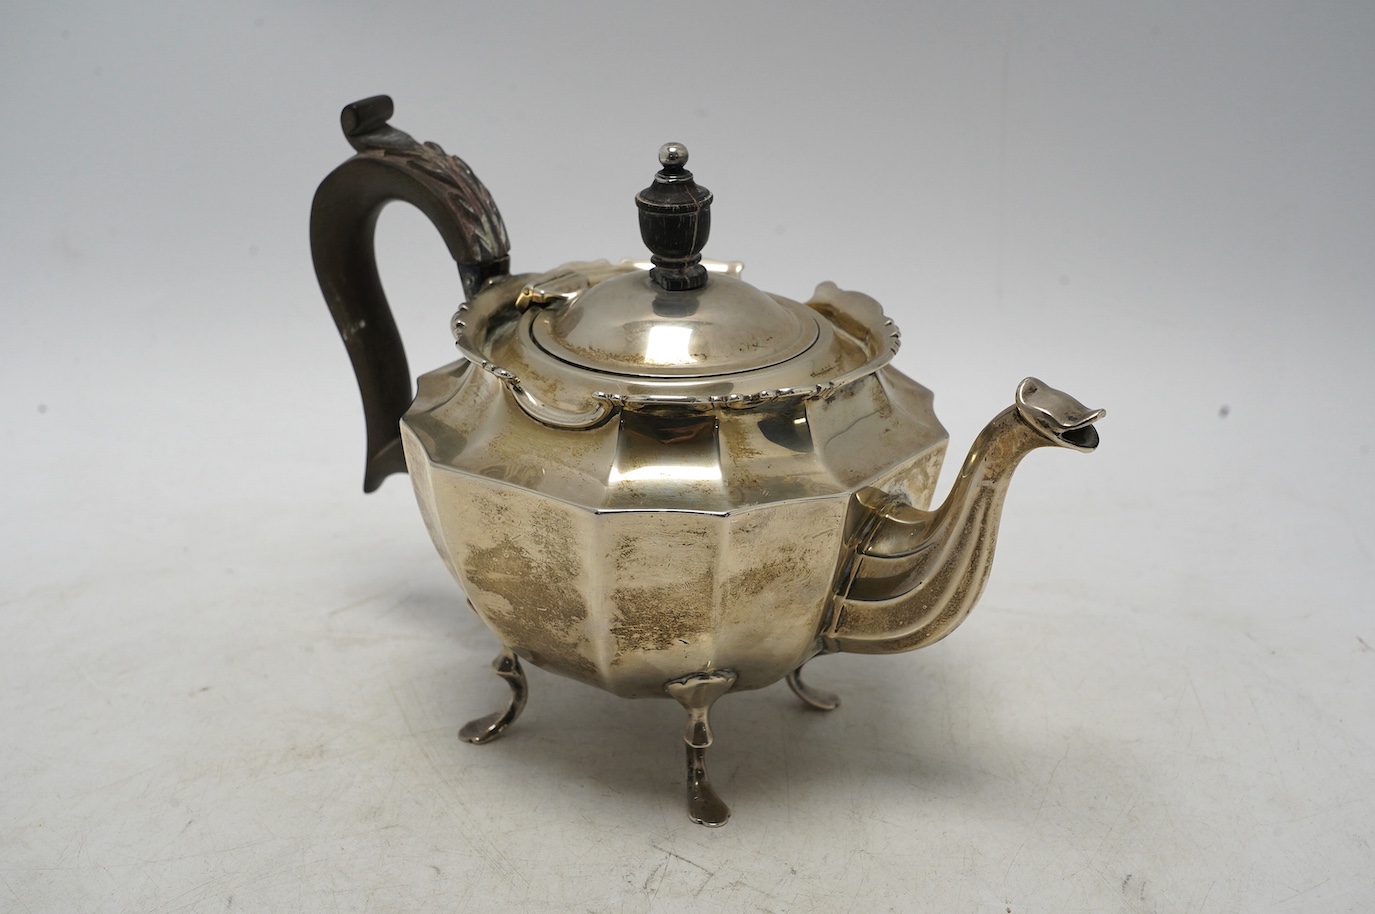 An Edwardian silver bachelor's teapot, Barker Brothers, Birmingham, 1906, gross weight 11.2oz. Condition - fair